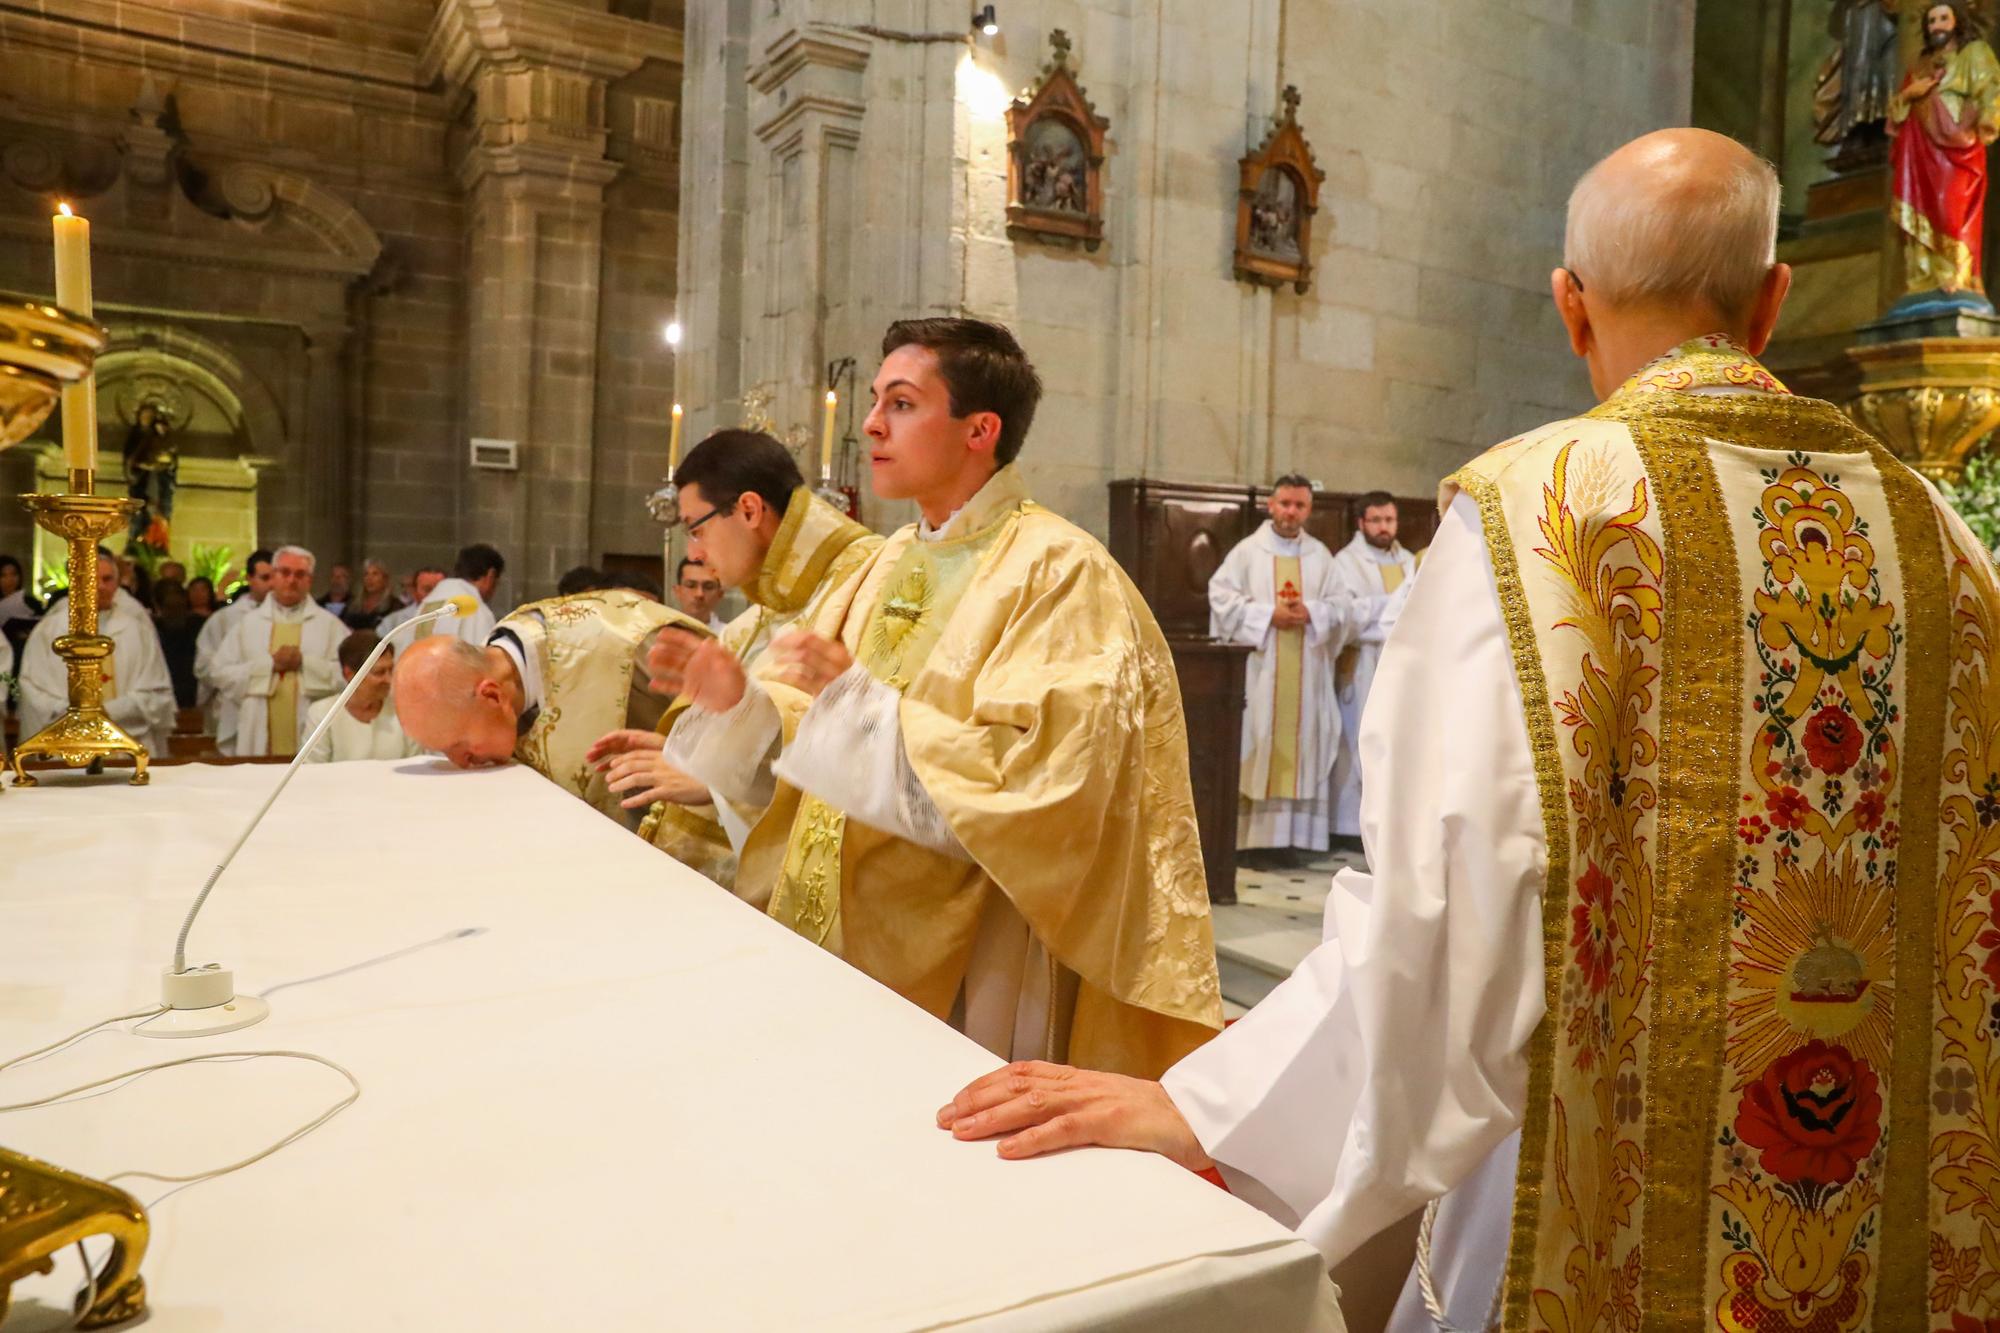 Oficia su primera misa con tan solo 24 años: así fue el multitudinario debut del sacerdote Ernesto Gómez Juanatey